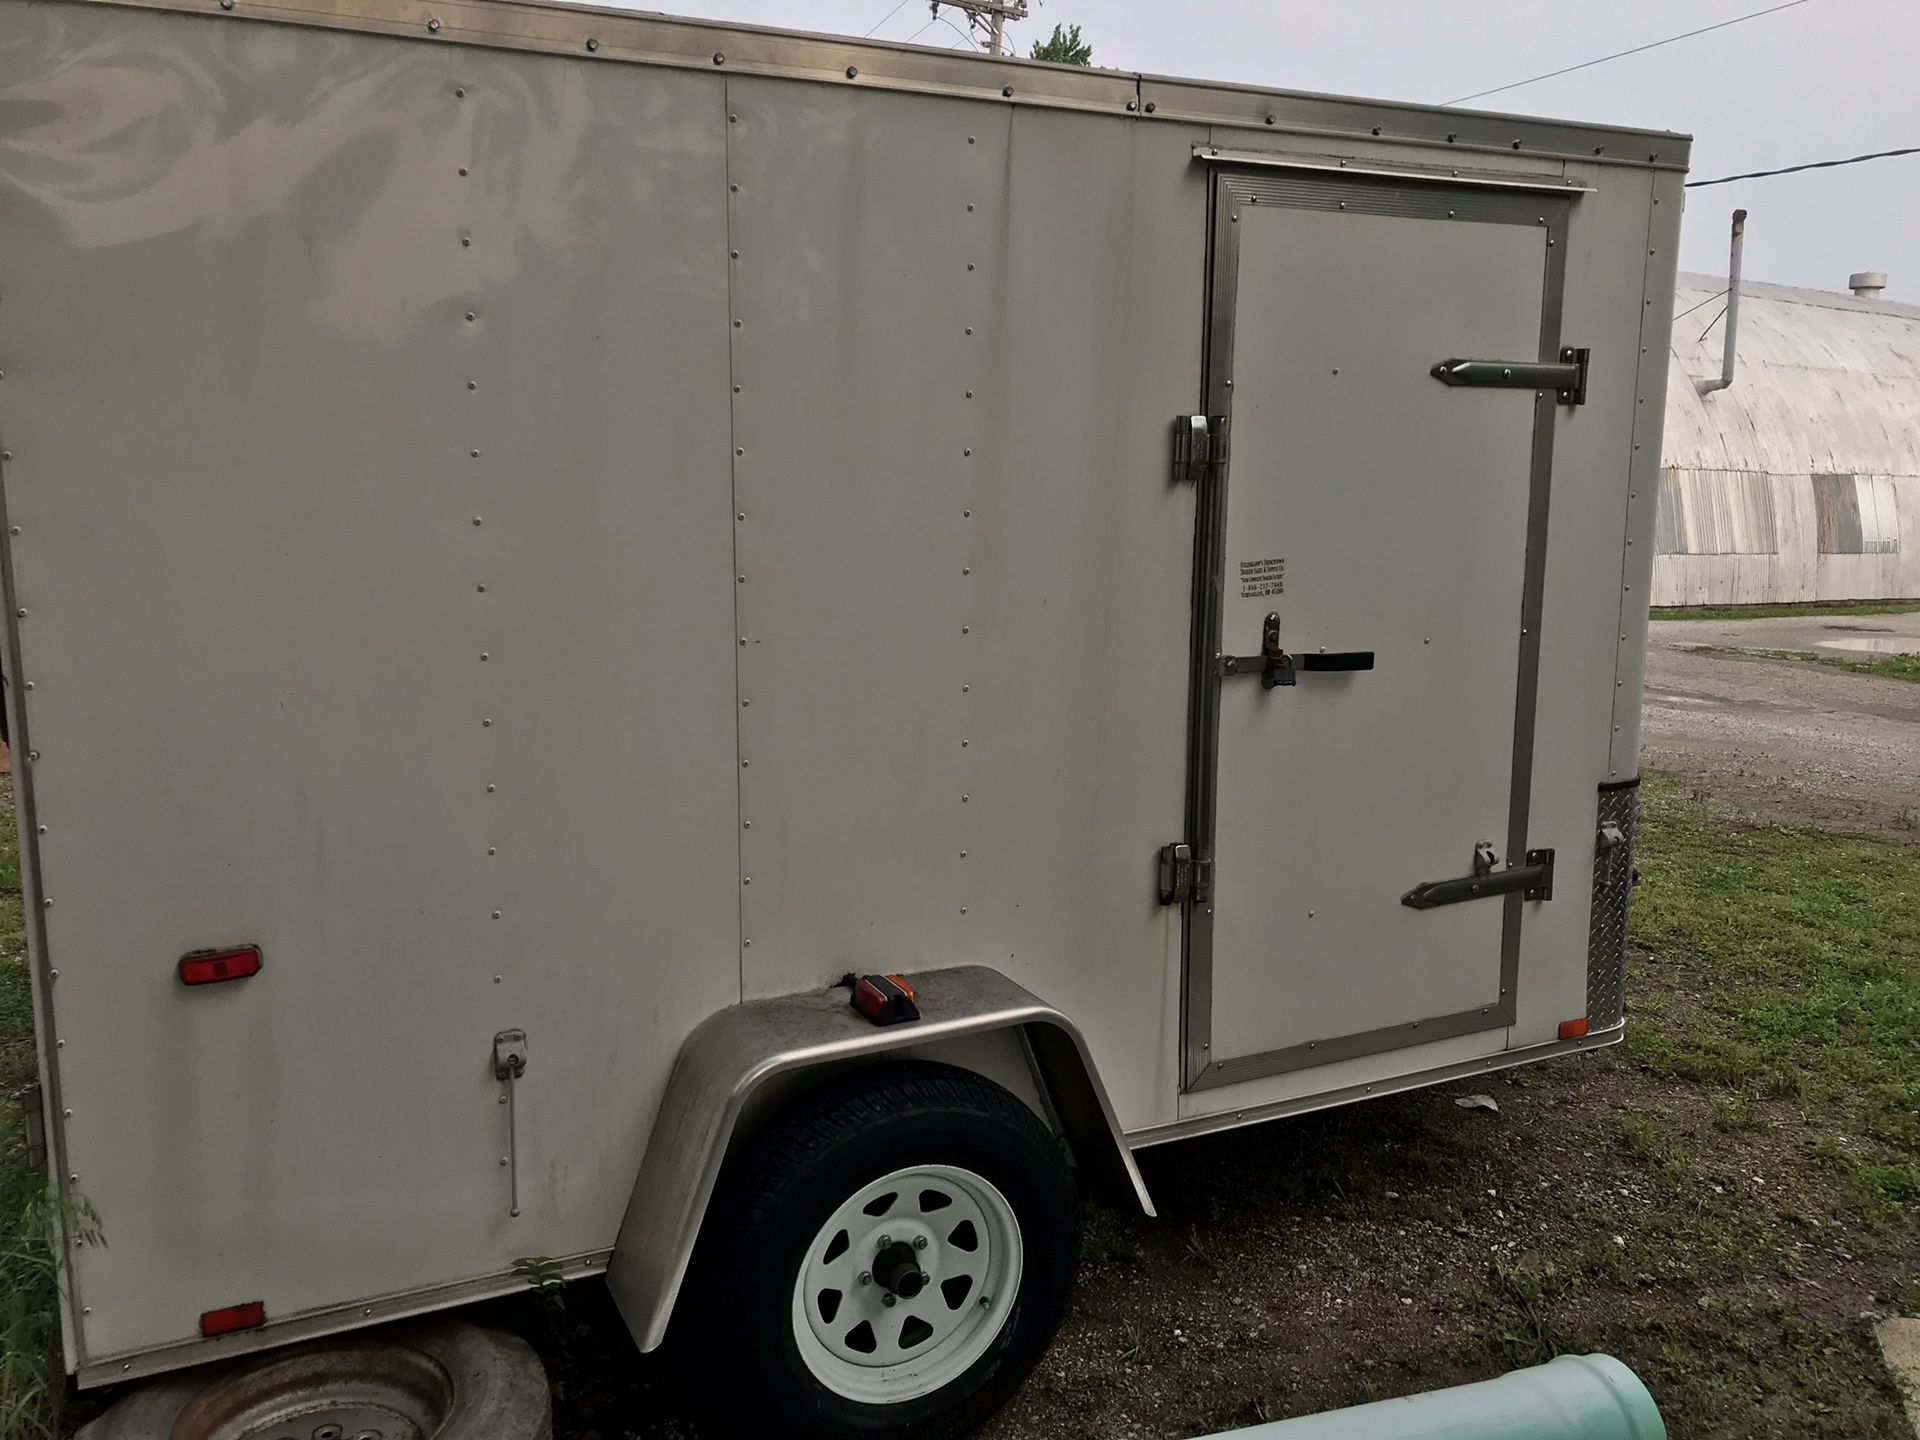 Nice cargo trailer